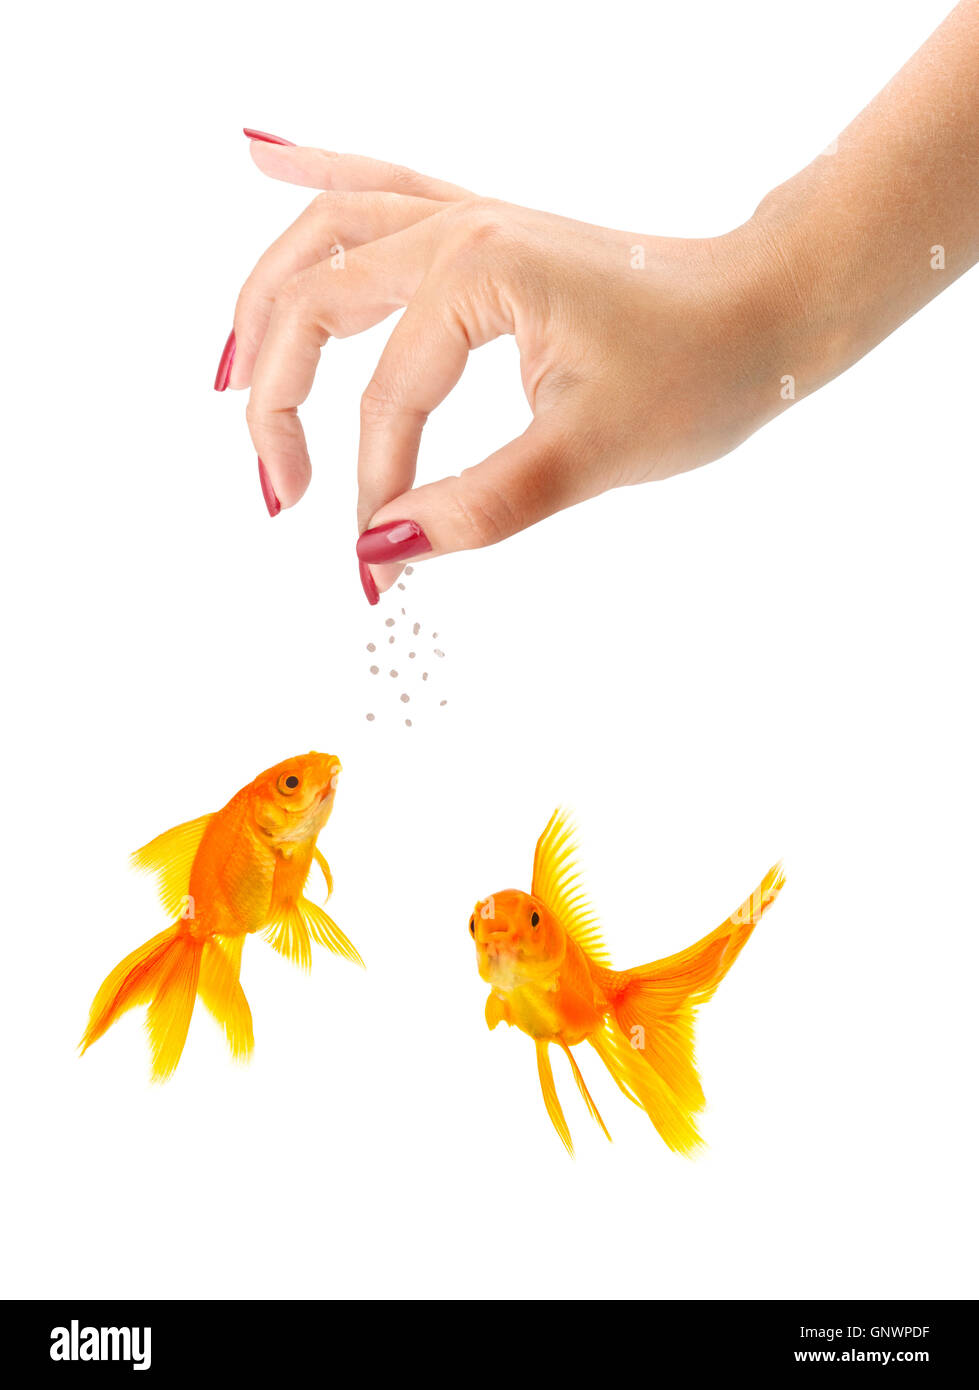 Рыбка ладошкой. Кормление рыбок картинка. Кормление золотых рыбок. Женщина кормит рыбку.